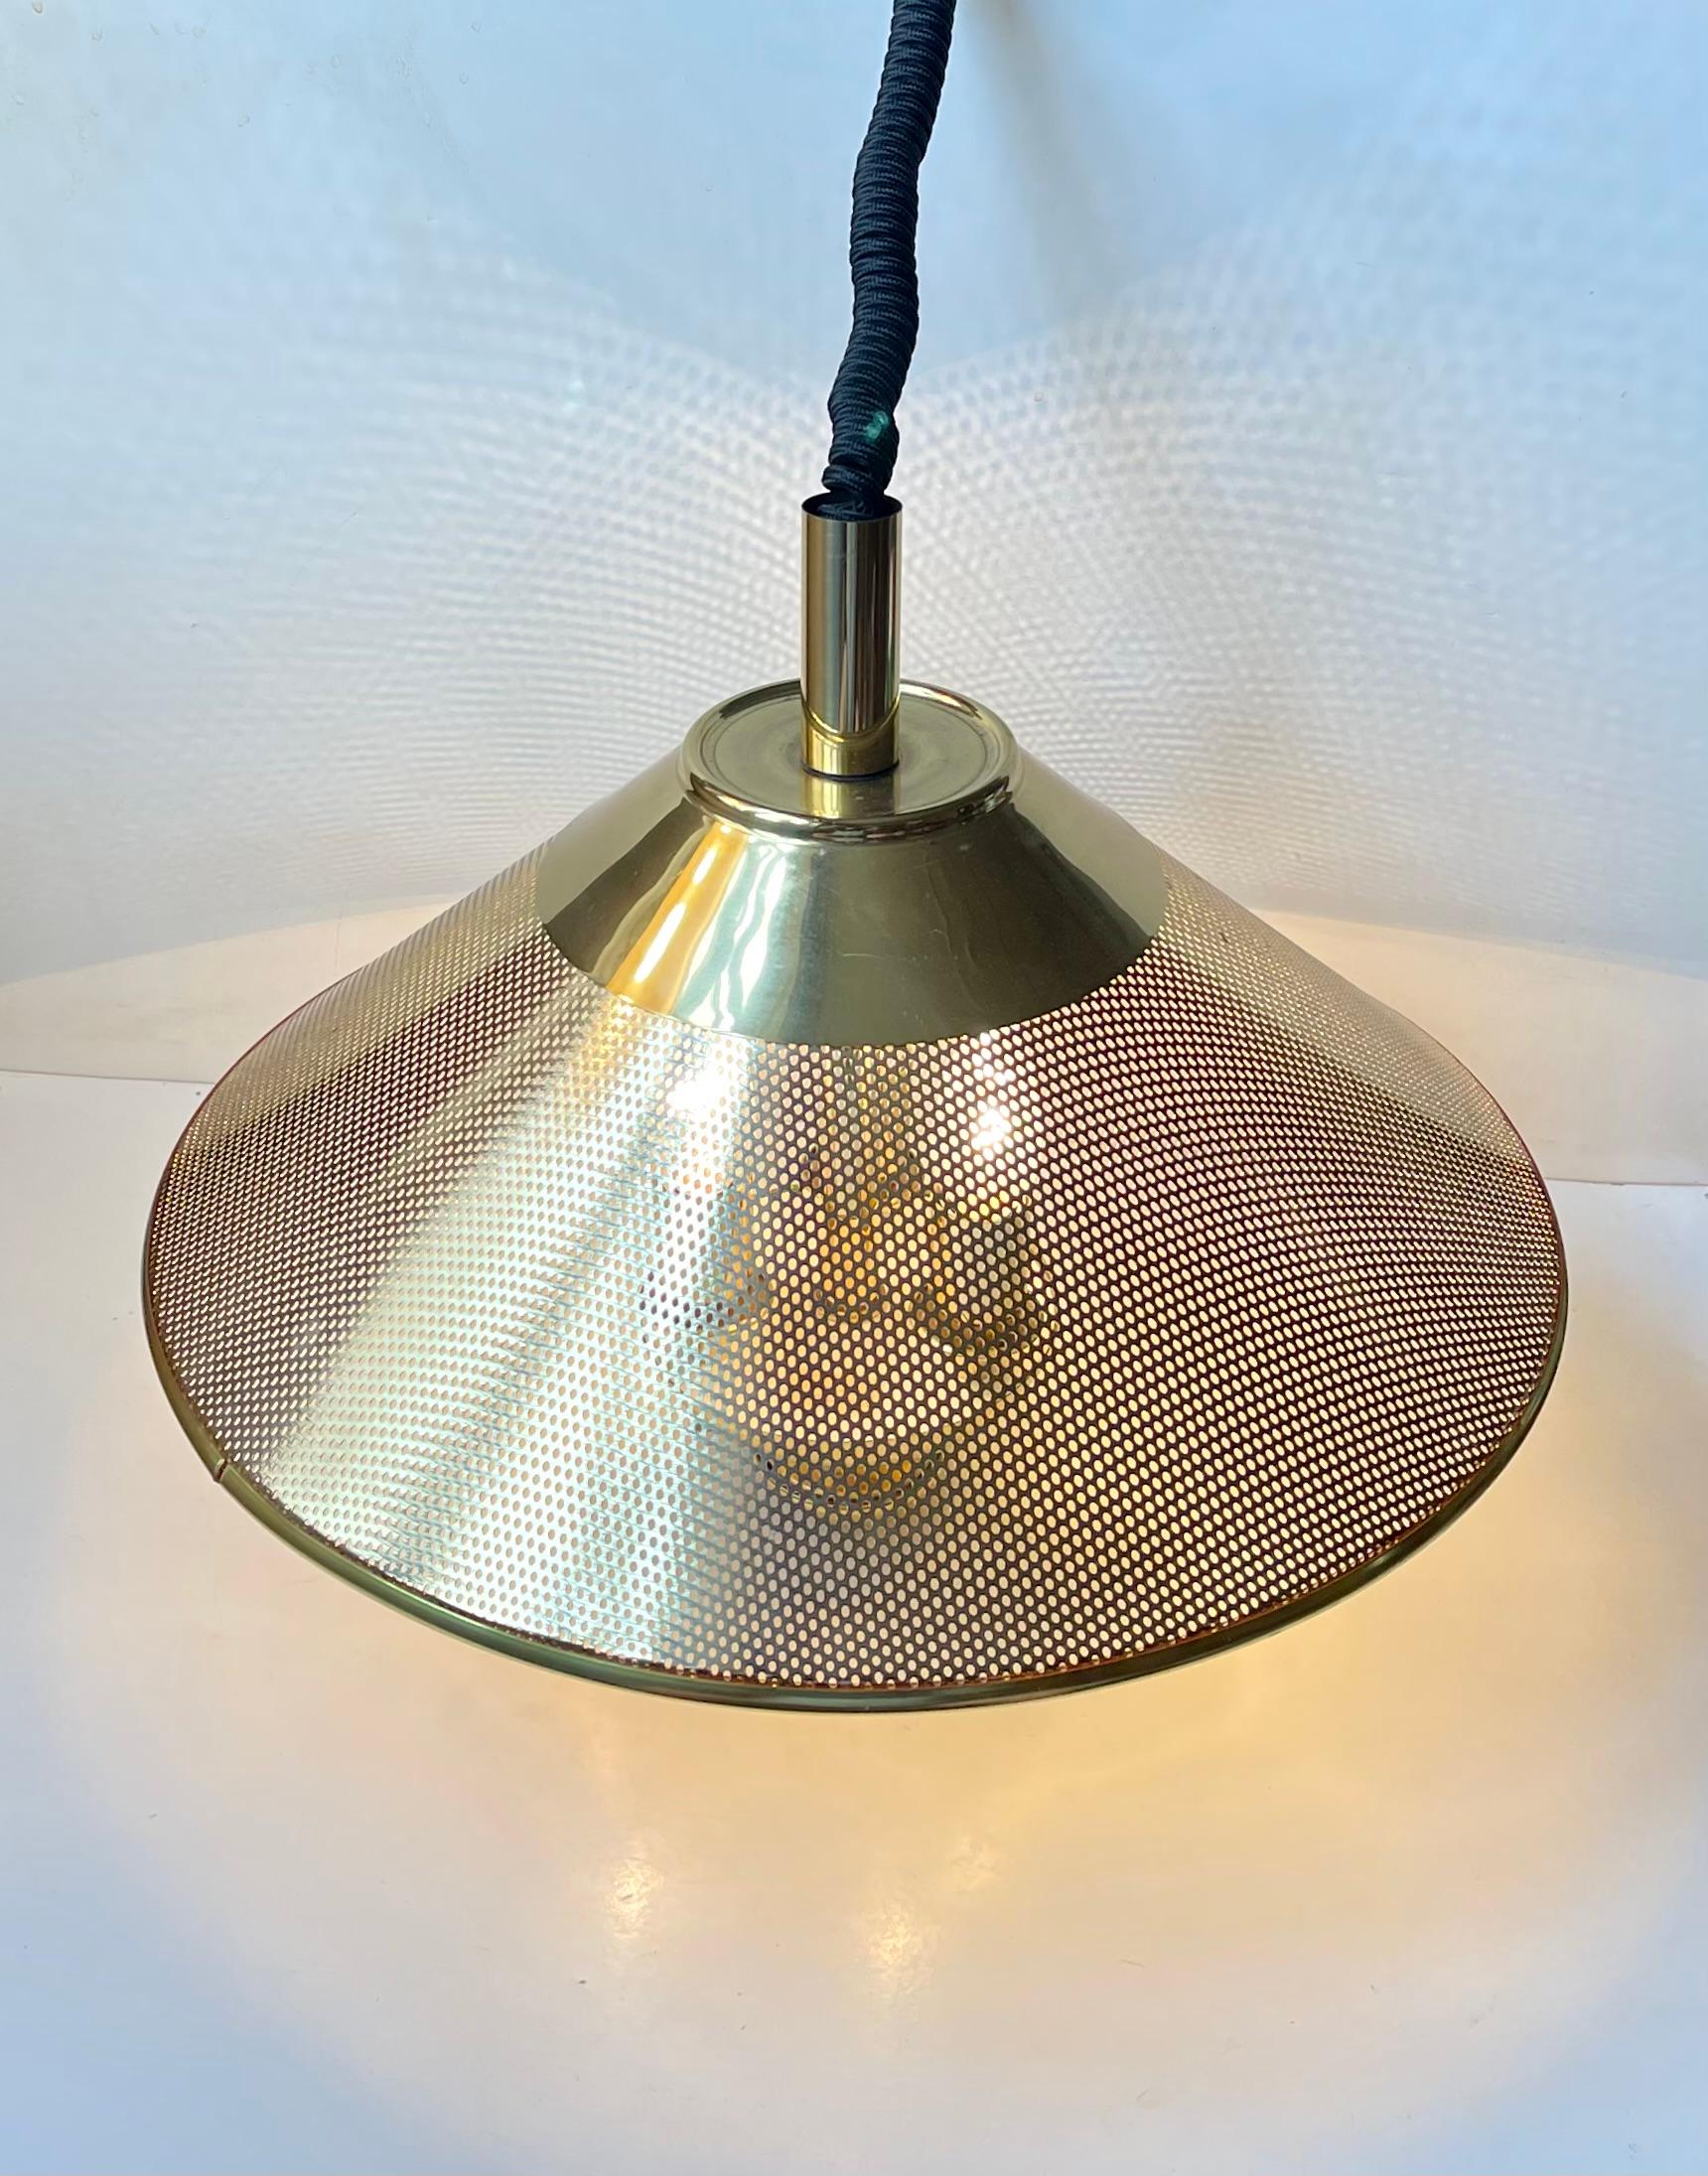 Lampe suspendue danoise vintage, élégante et réglable en hauteur. Le style Nautical/Maritime ajoutera une touche chaleureuse à tout intérieur moderne. La lampe est dans un très bel état vintage, avec des traces d'usure et une patine naturelle sur le